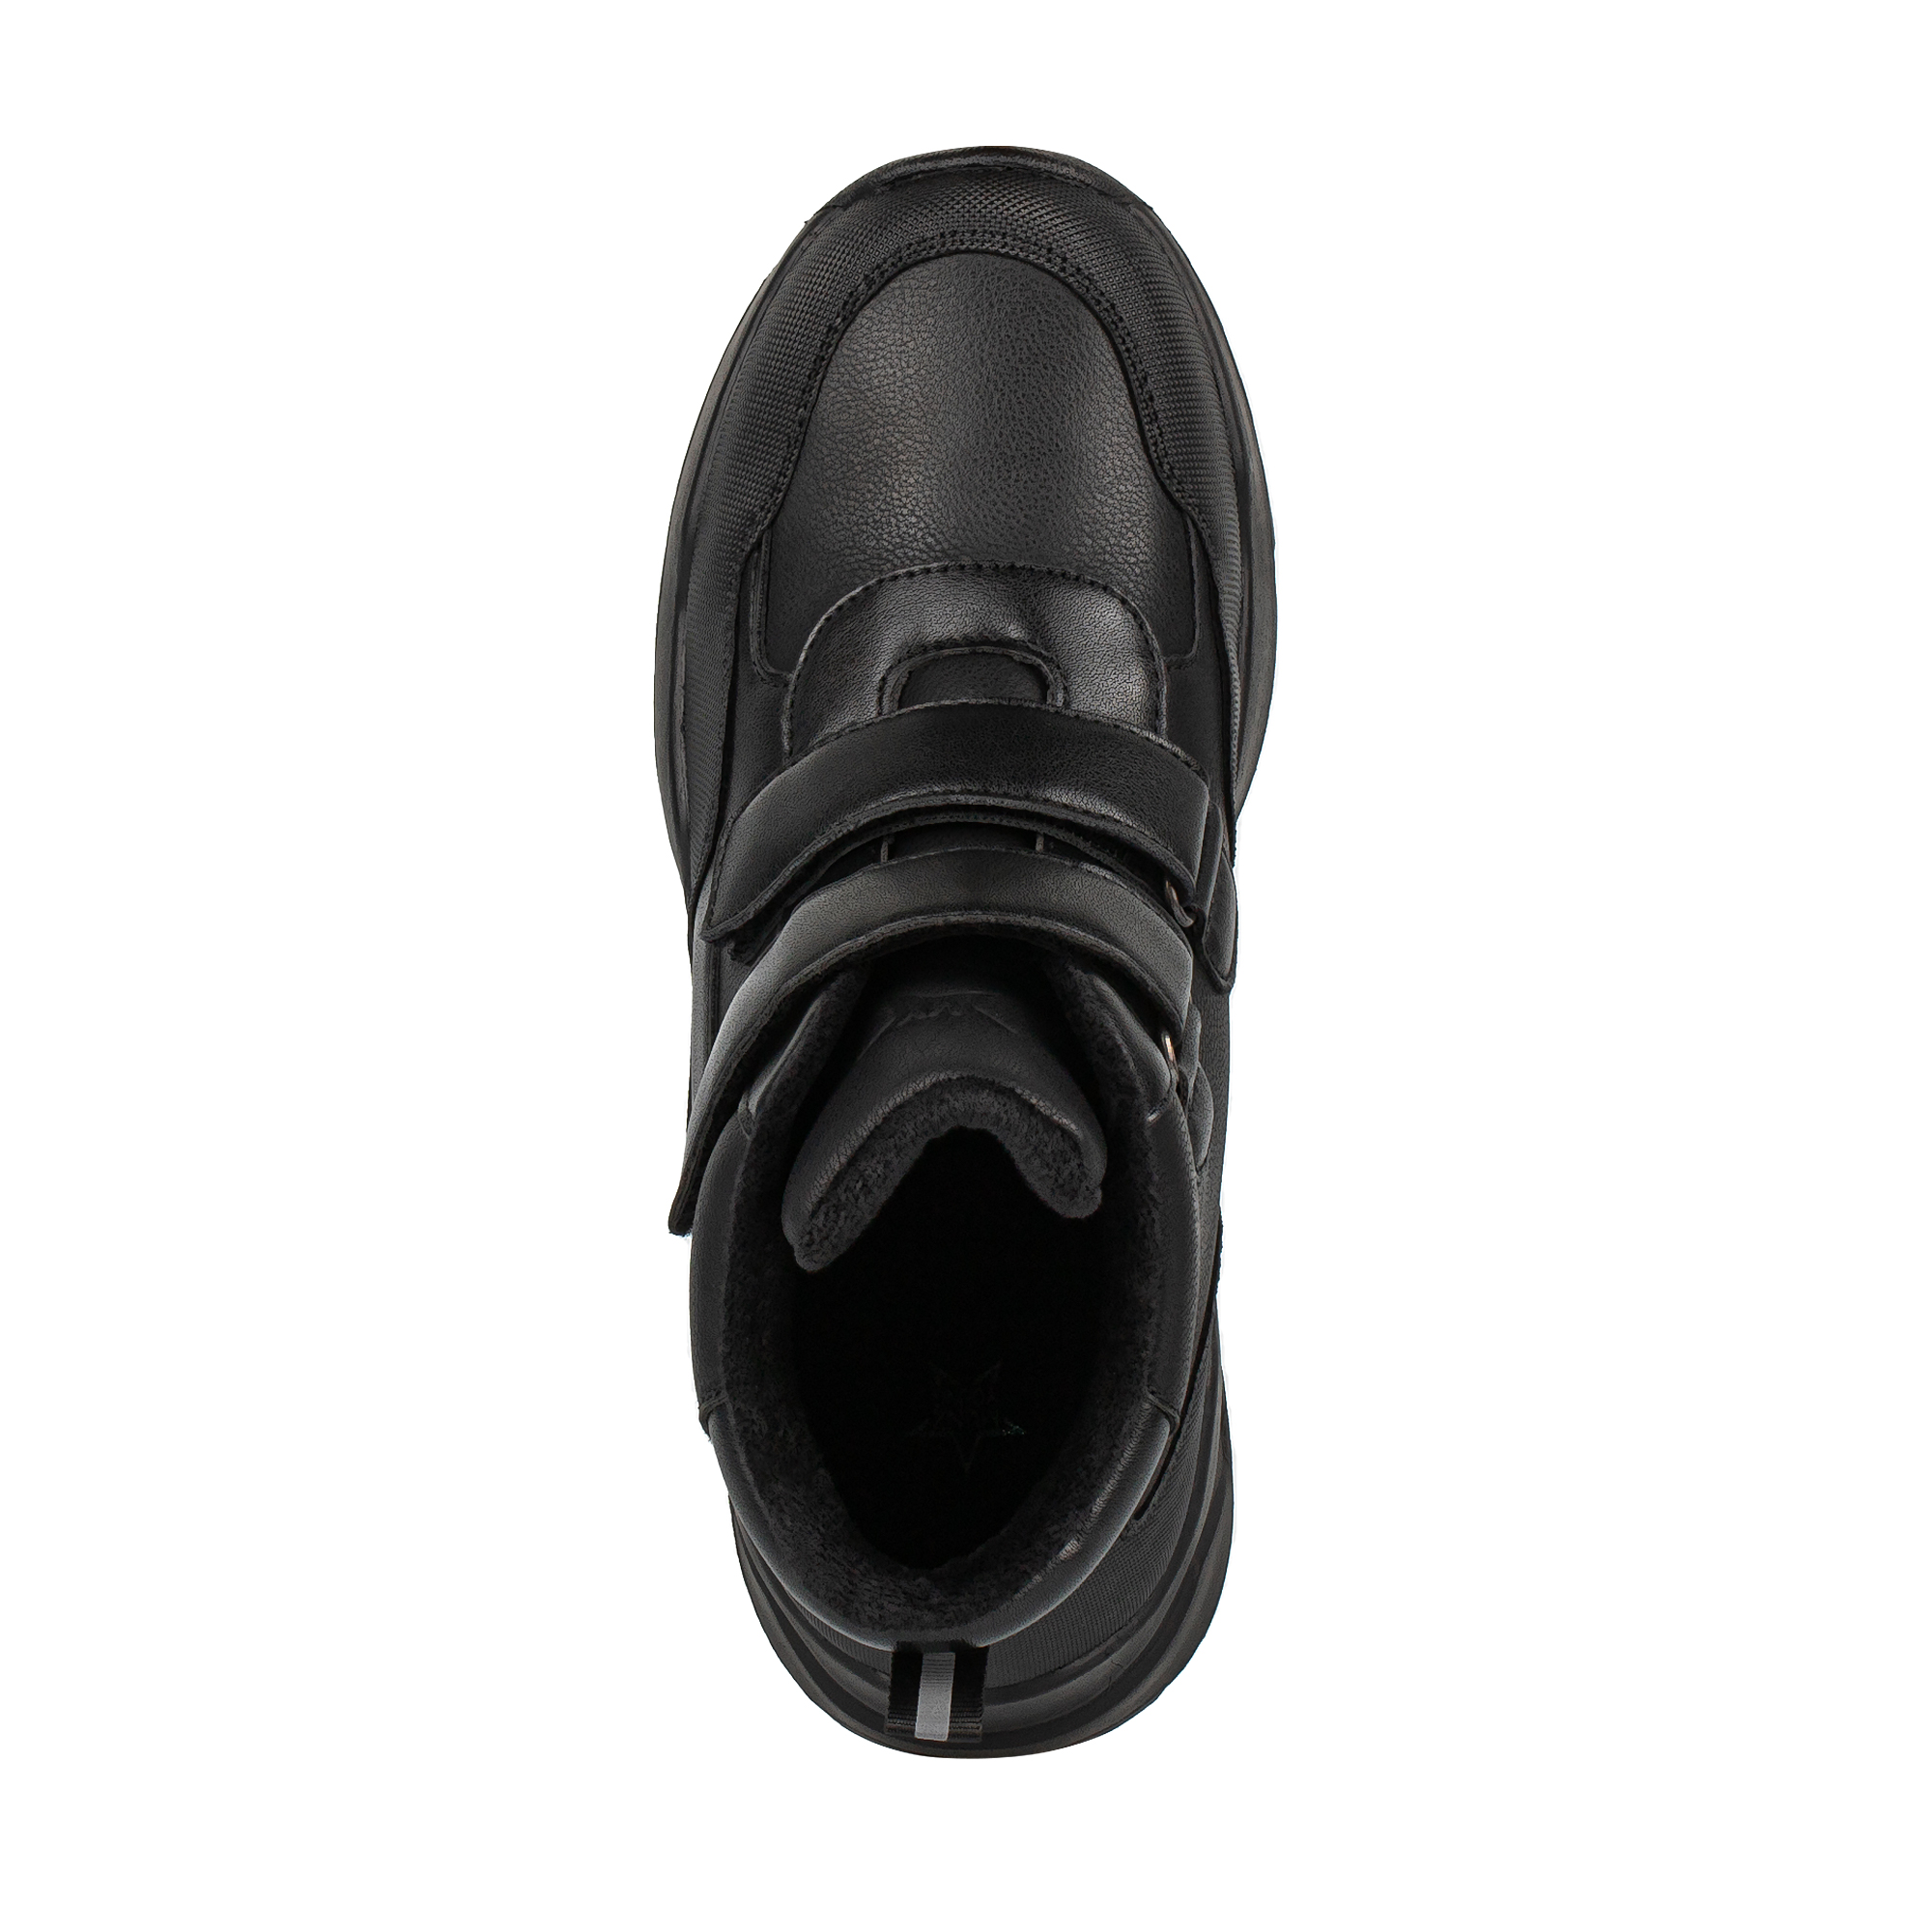 Ботинки MUNZ YOUNG 174-137A-2602, цвет черный, размер 34 - фото 5